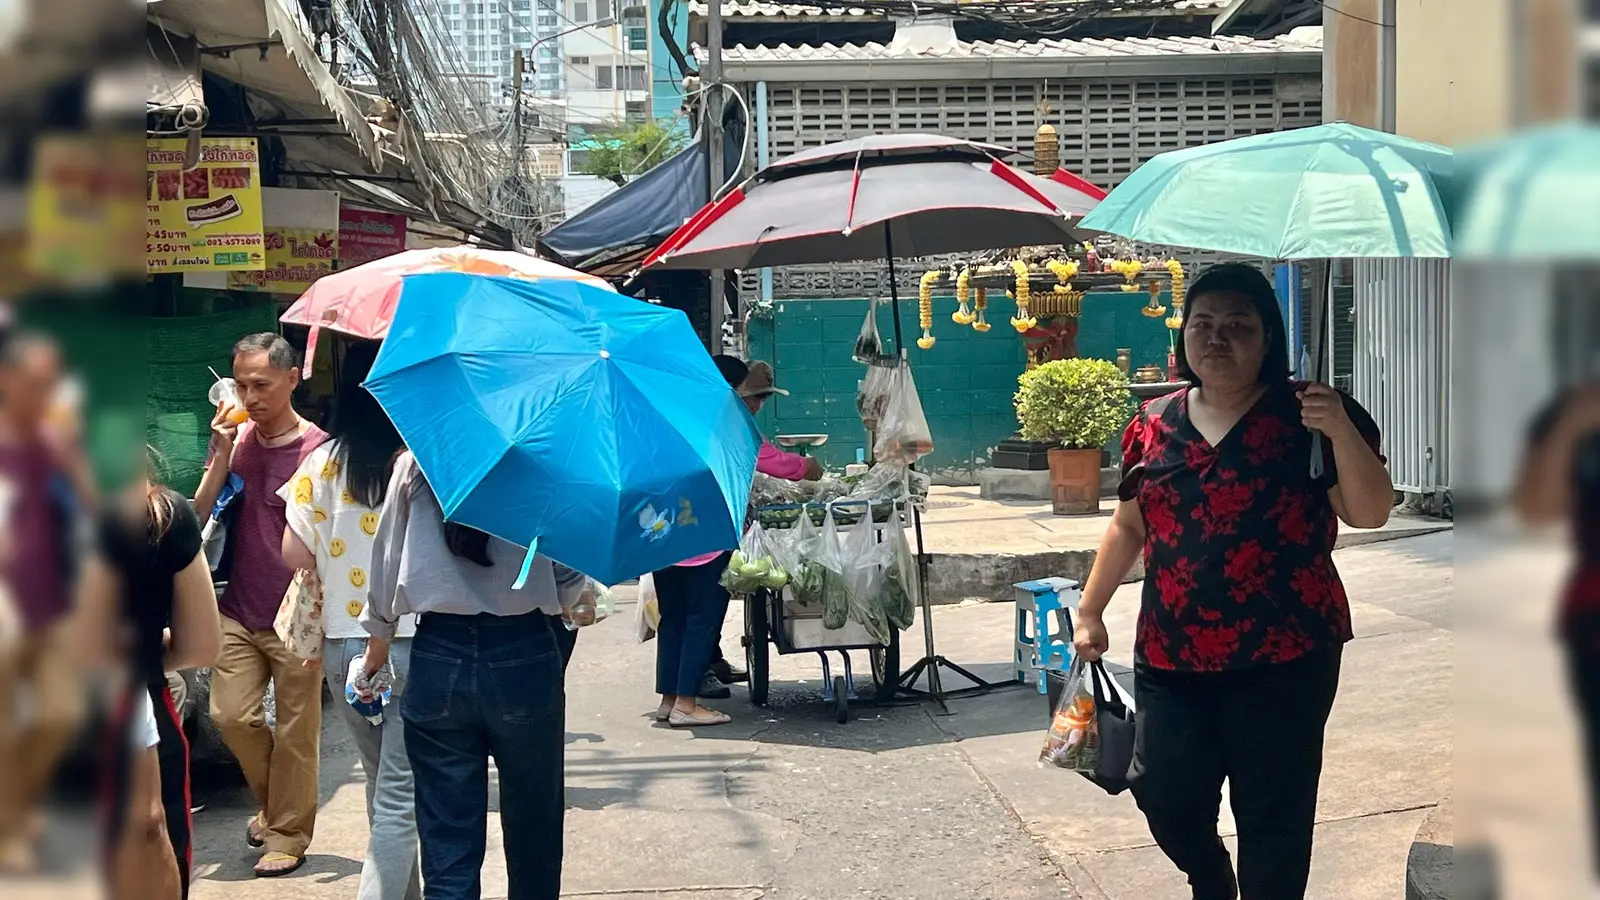 Menschen schützen sich in Bangkok mit Schirmen vor der extremen Hitze und vor der Sonne. (Foto: Carola Frentzen/dpa)